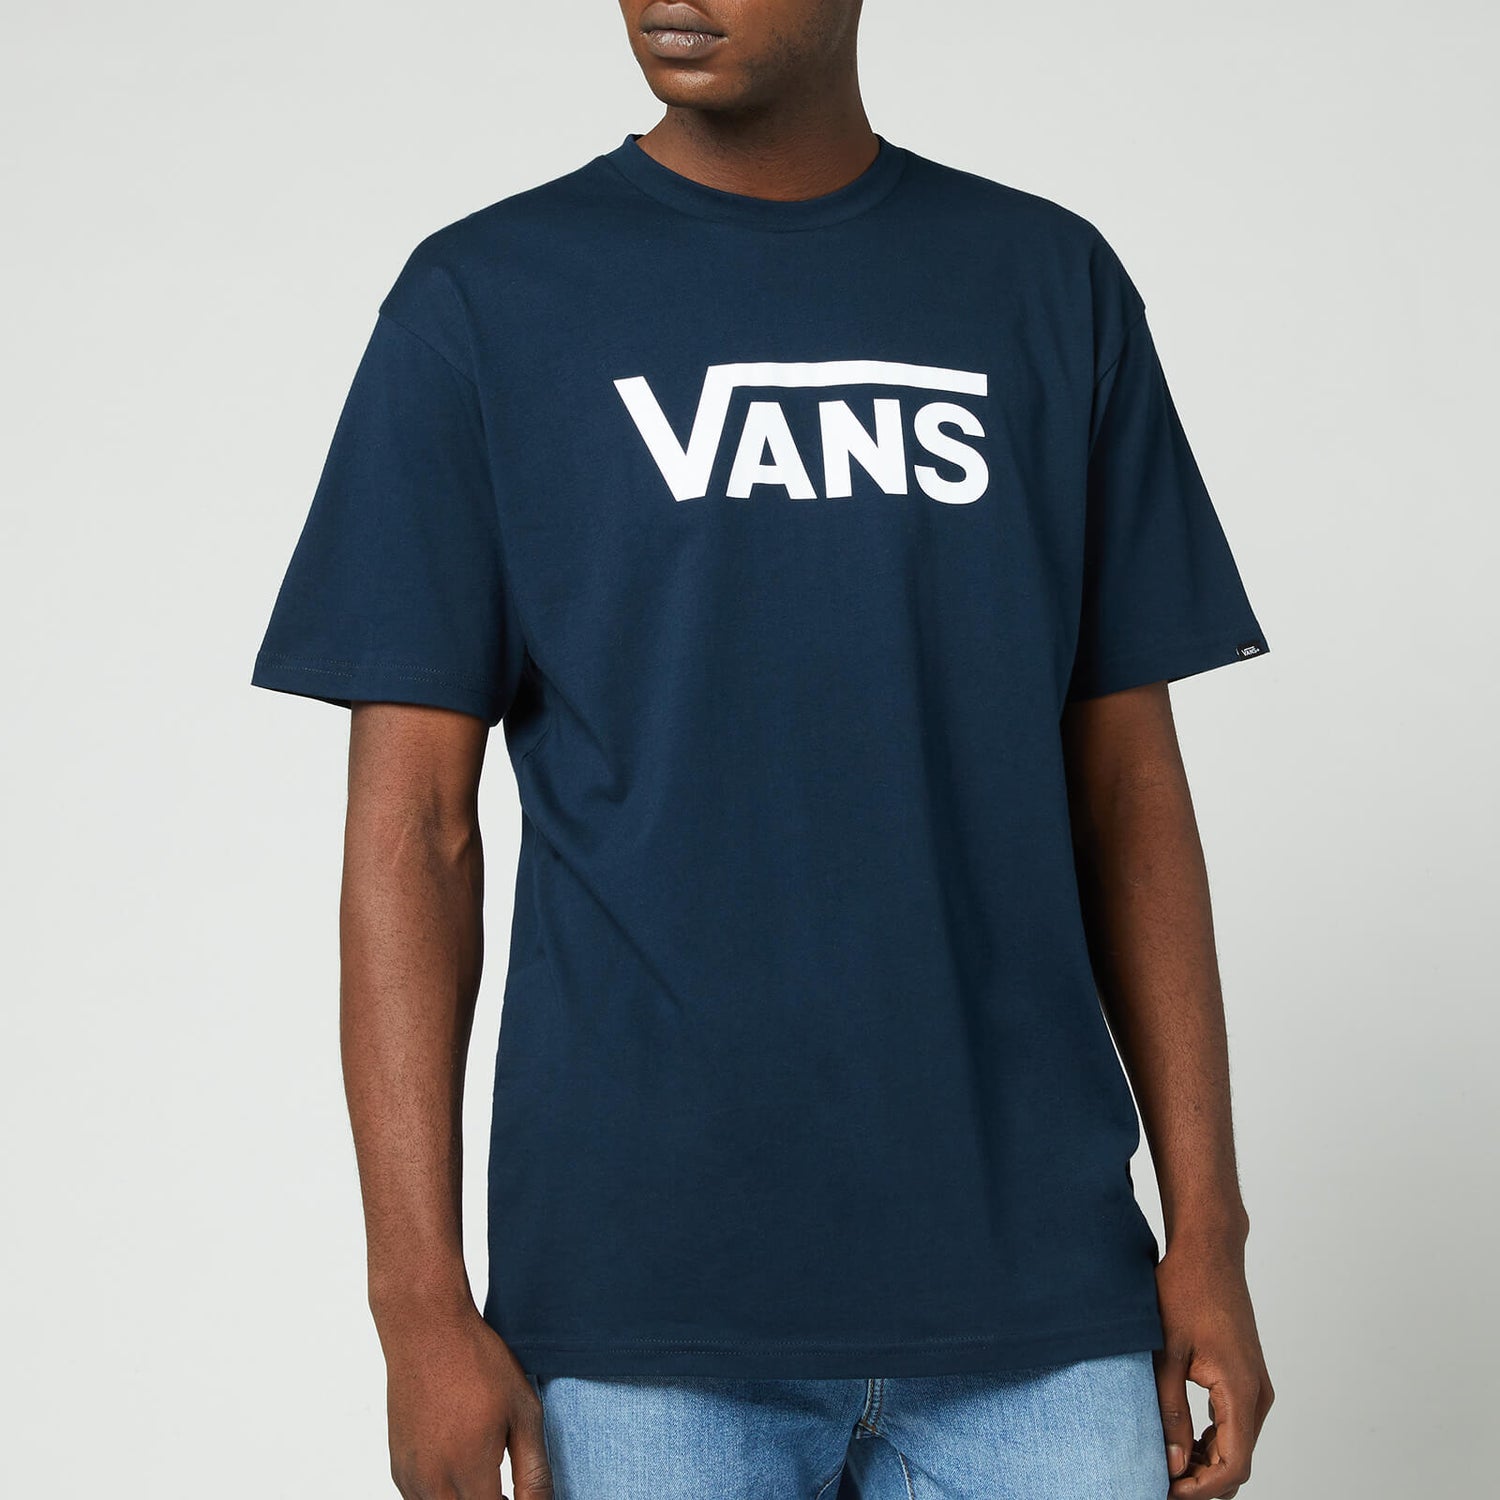 Vans Men's Classic Crewneck T-Shirt - Navy/White